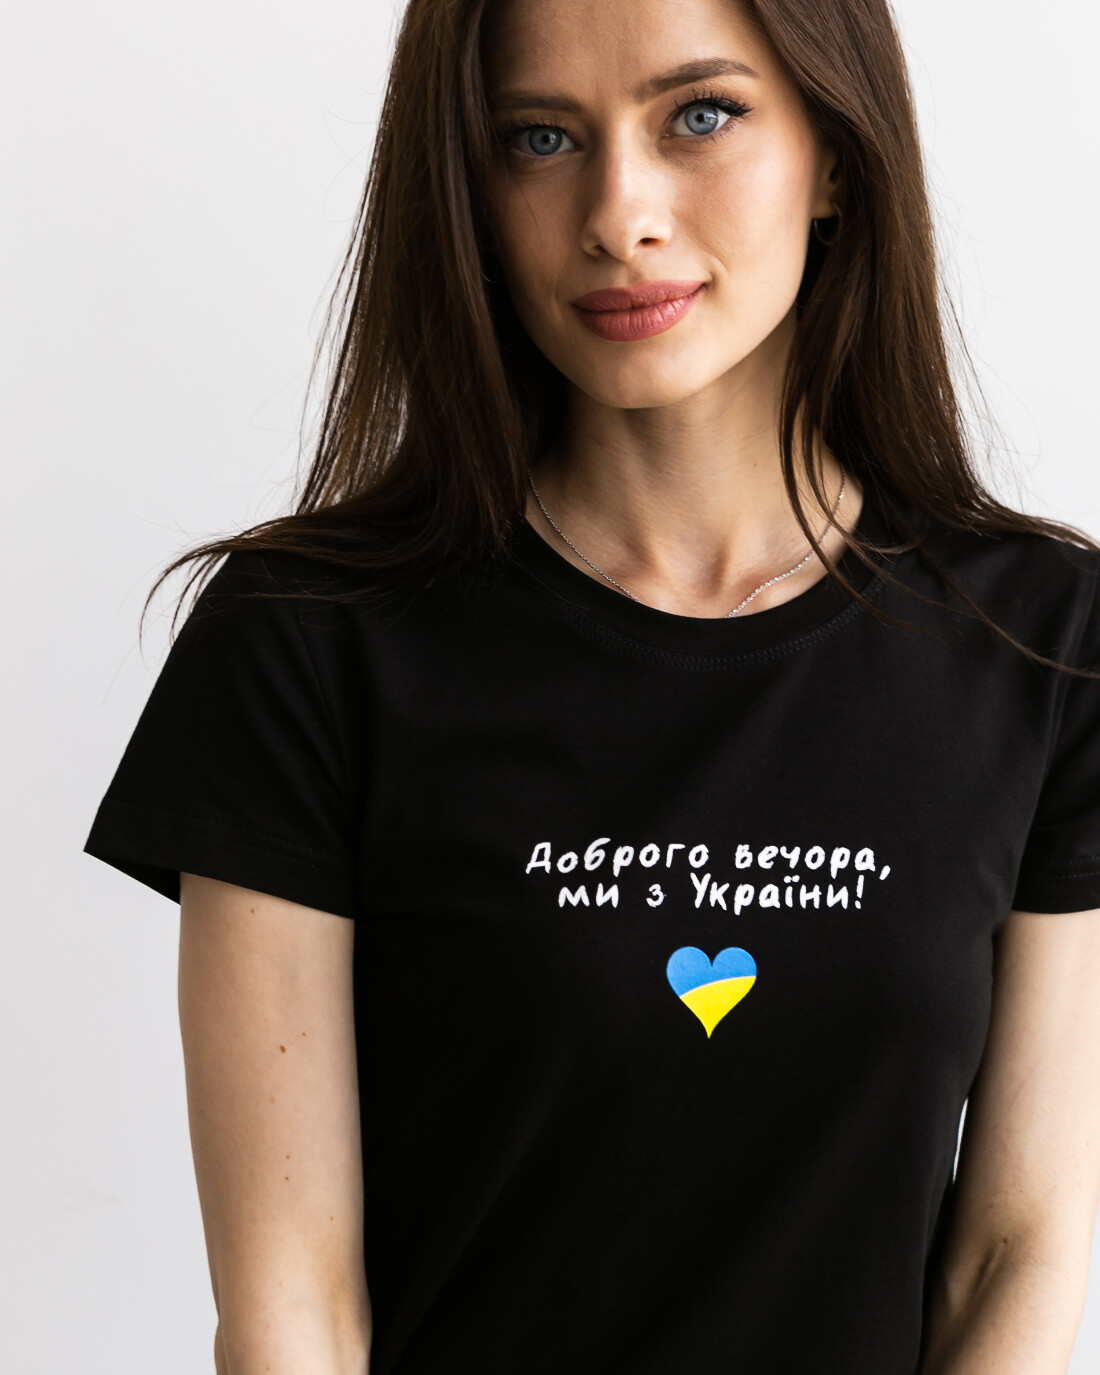 Женская футболка приталенного кроя доброго вечора, ми з україни 24543